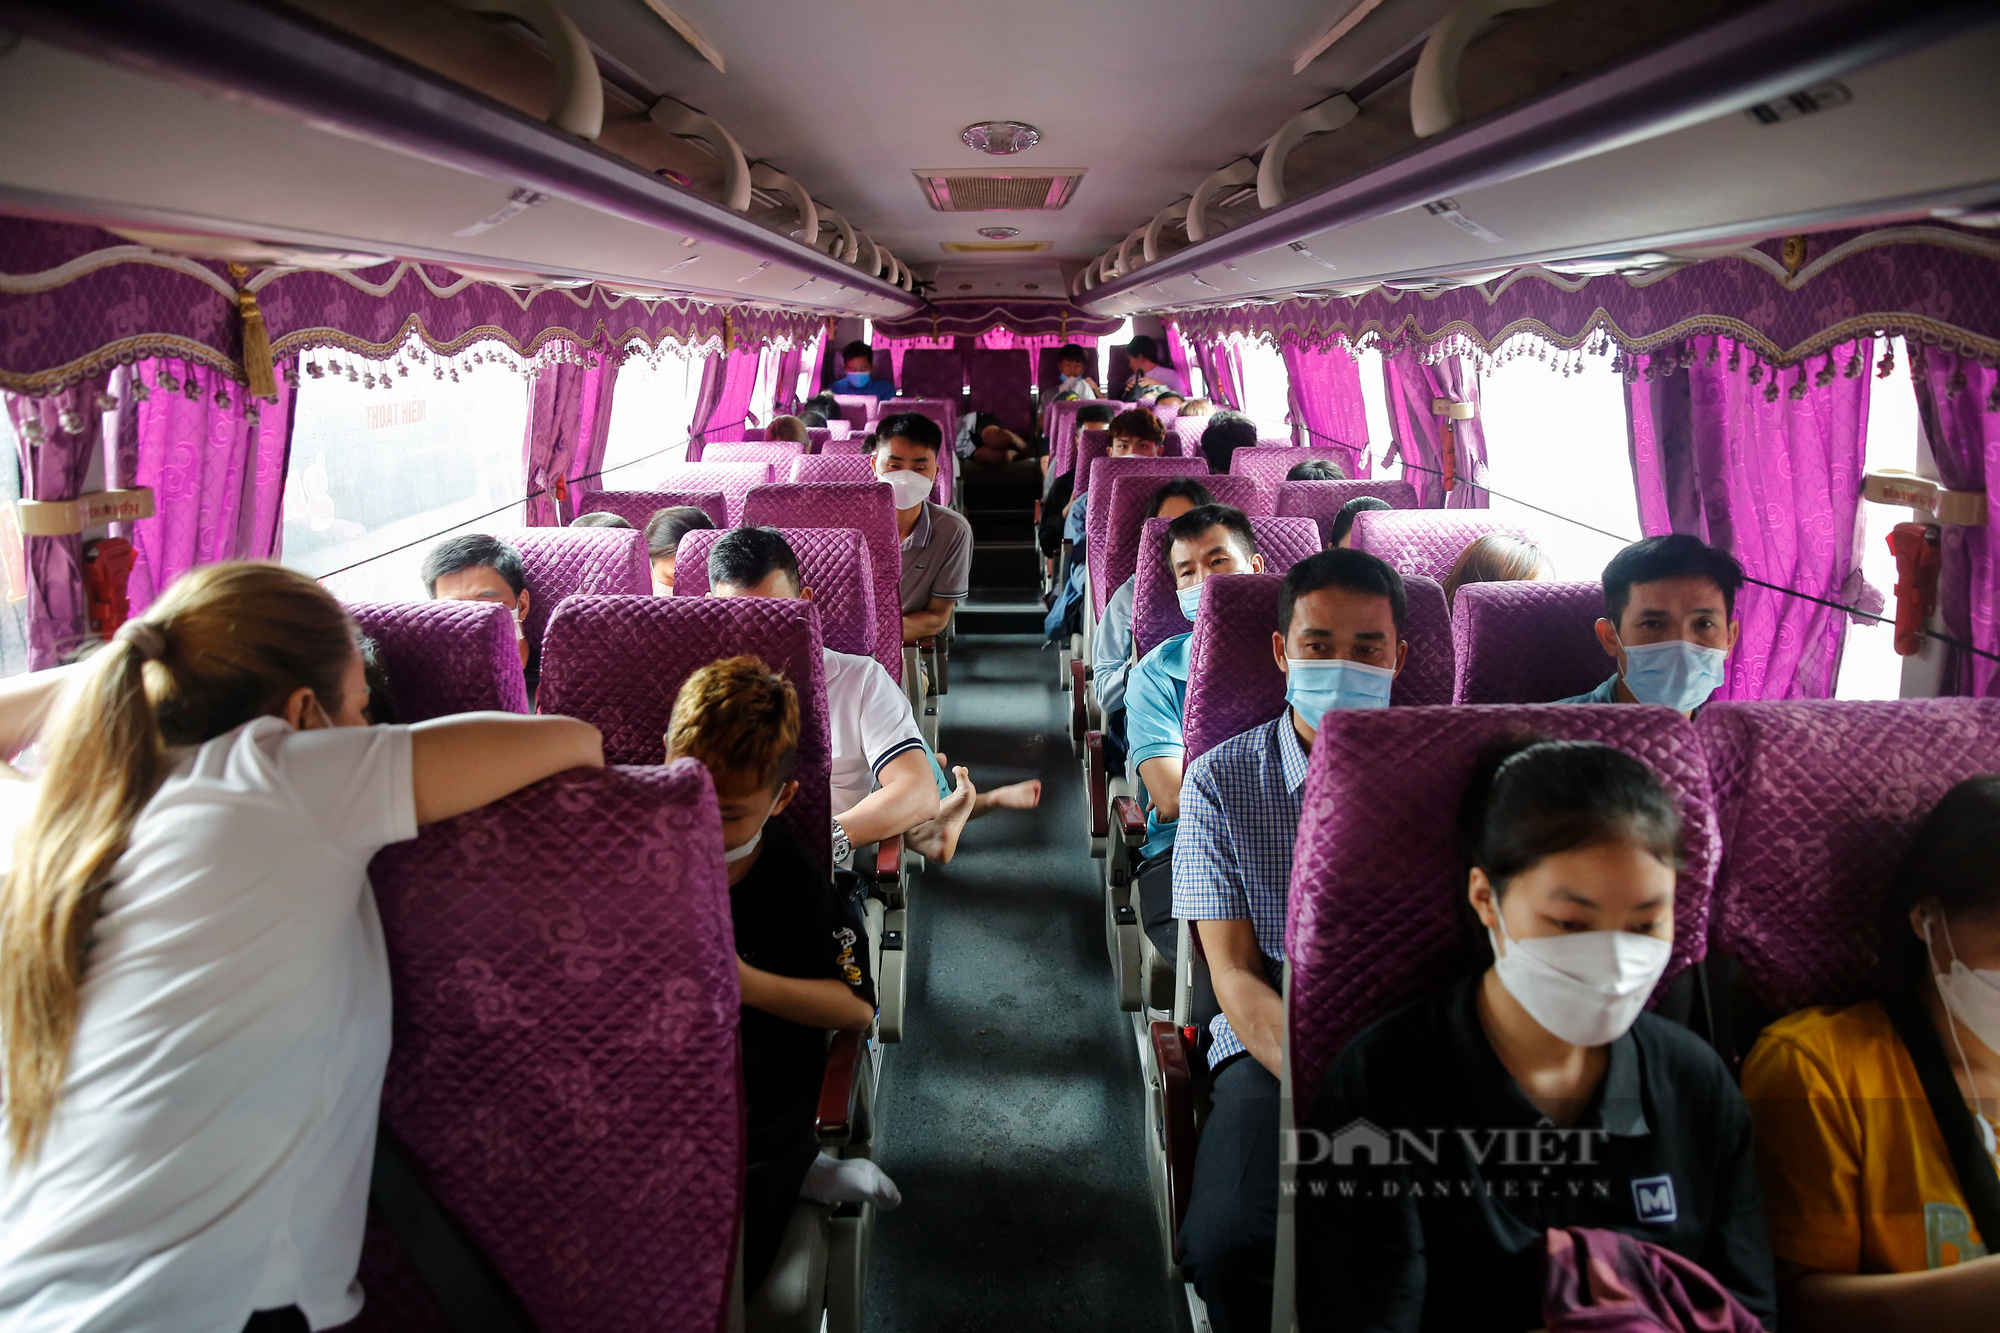 Bến xe tại Hà Nội đông nghẹt, người dân chen nhau lên xe khách về quê nghỉ lễ 30/4 - Ảnh 5.